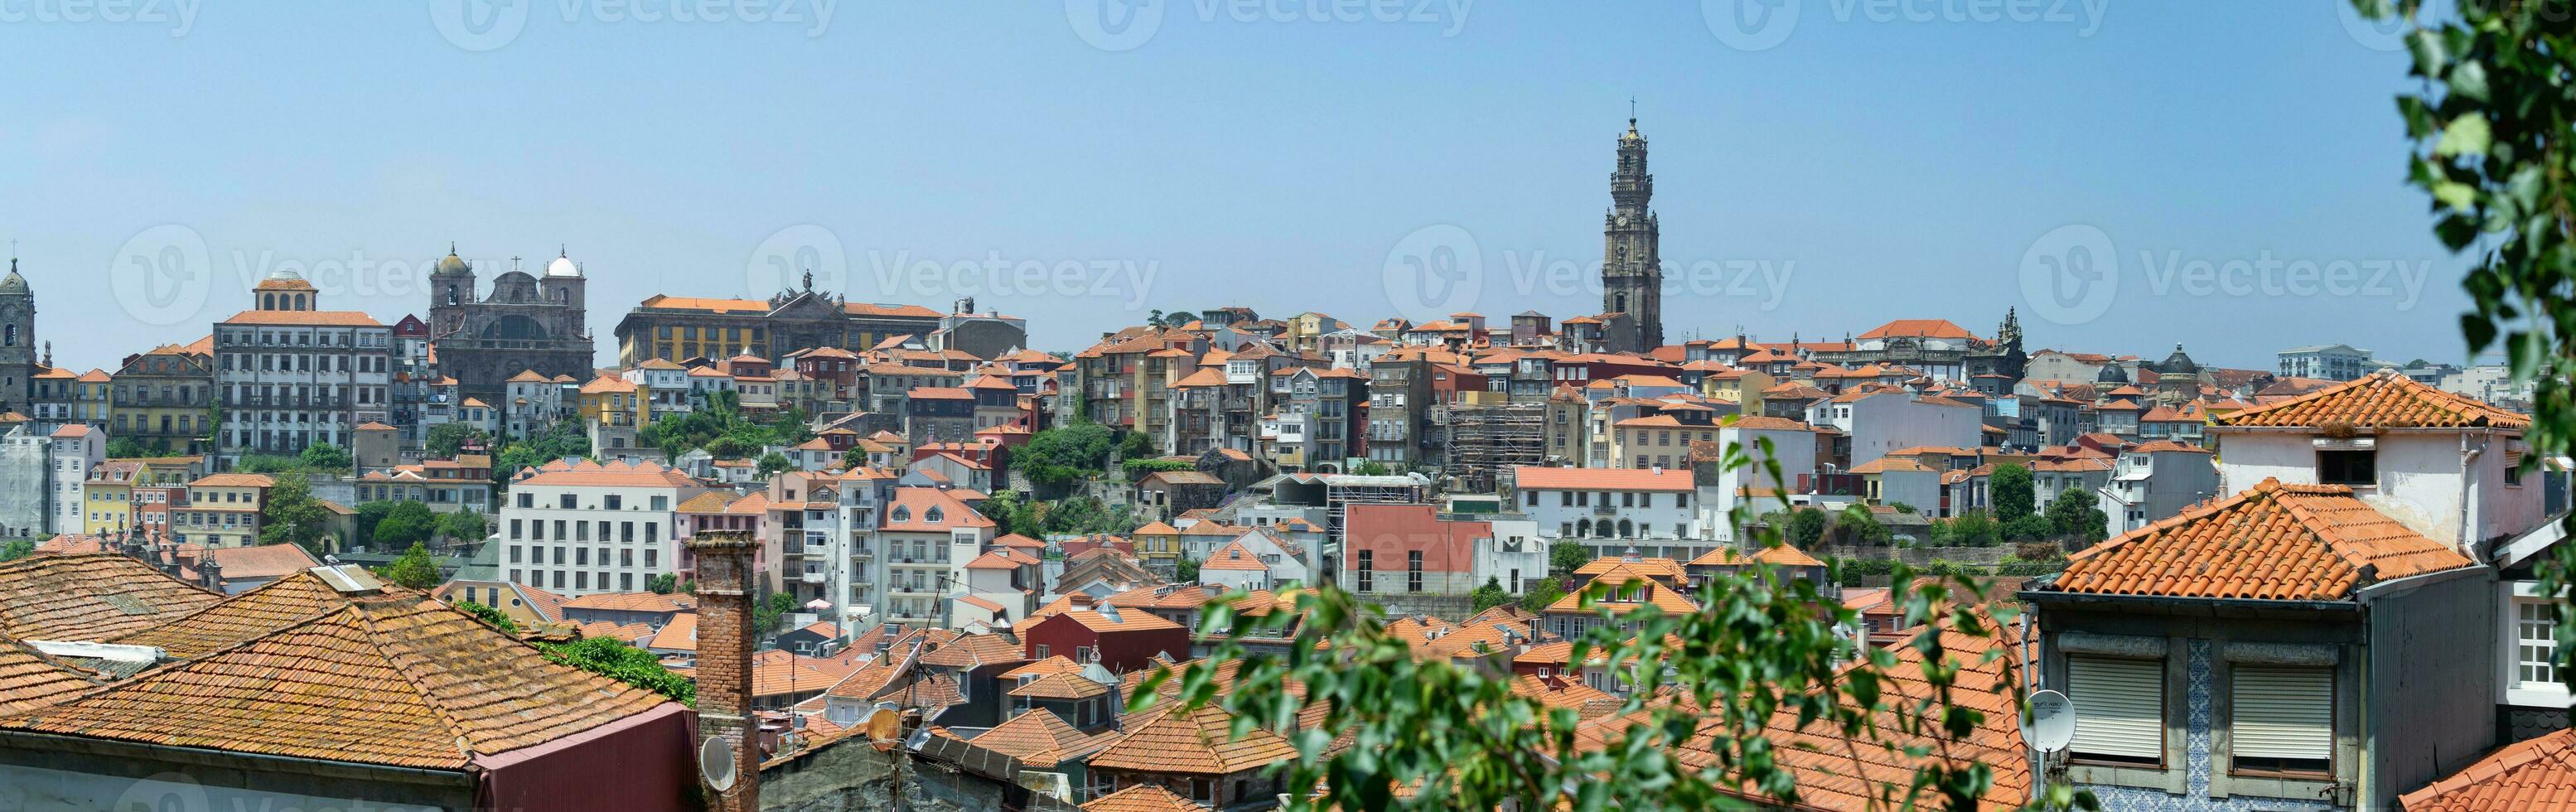 porto famoso storico città, Portogallo. architettura di vecchio cittadina. viaggio per ribeira e douro fiume. foto